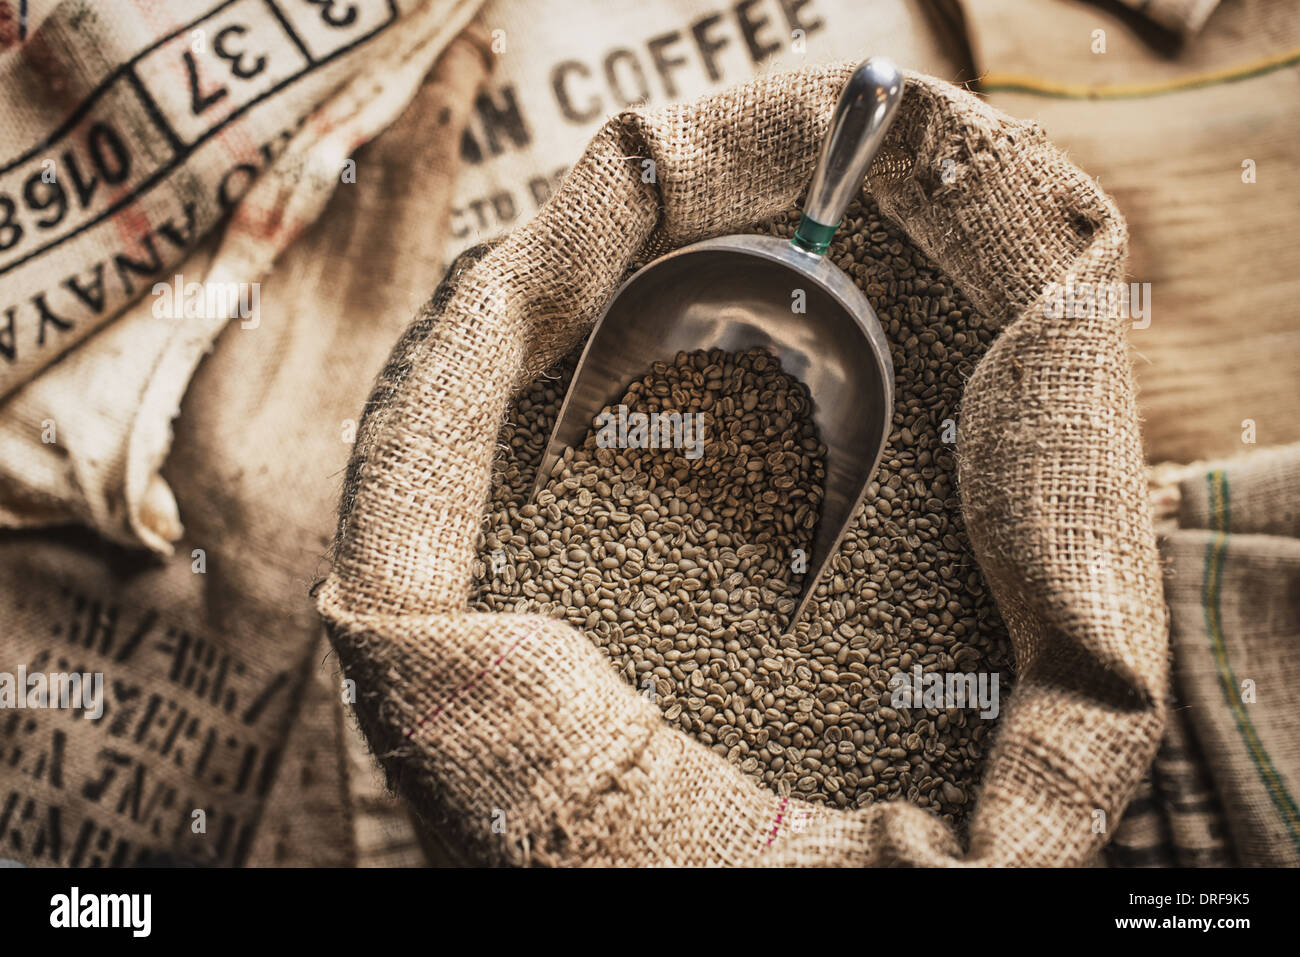 L'état de New York, USA Les sacs en toile de jute café beans traitement bean shed Banque D'Images